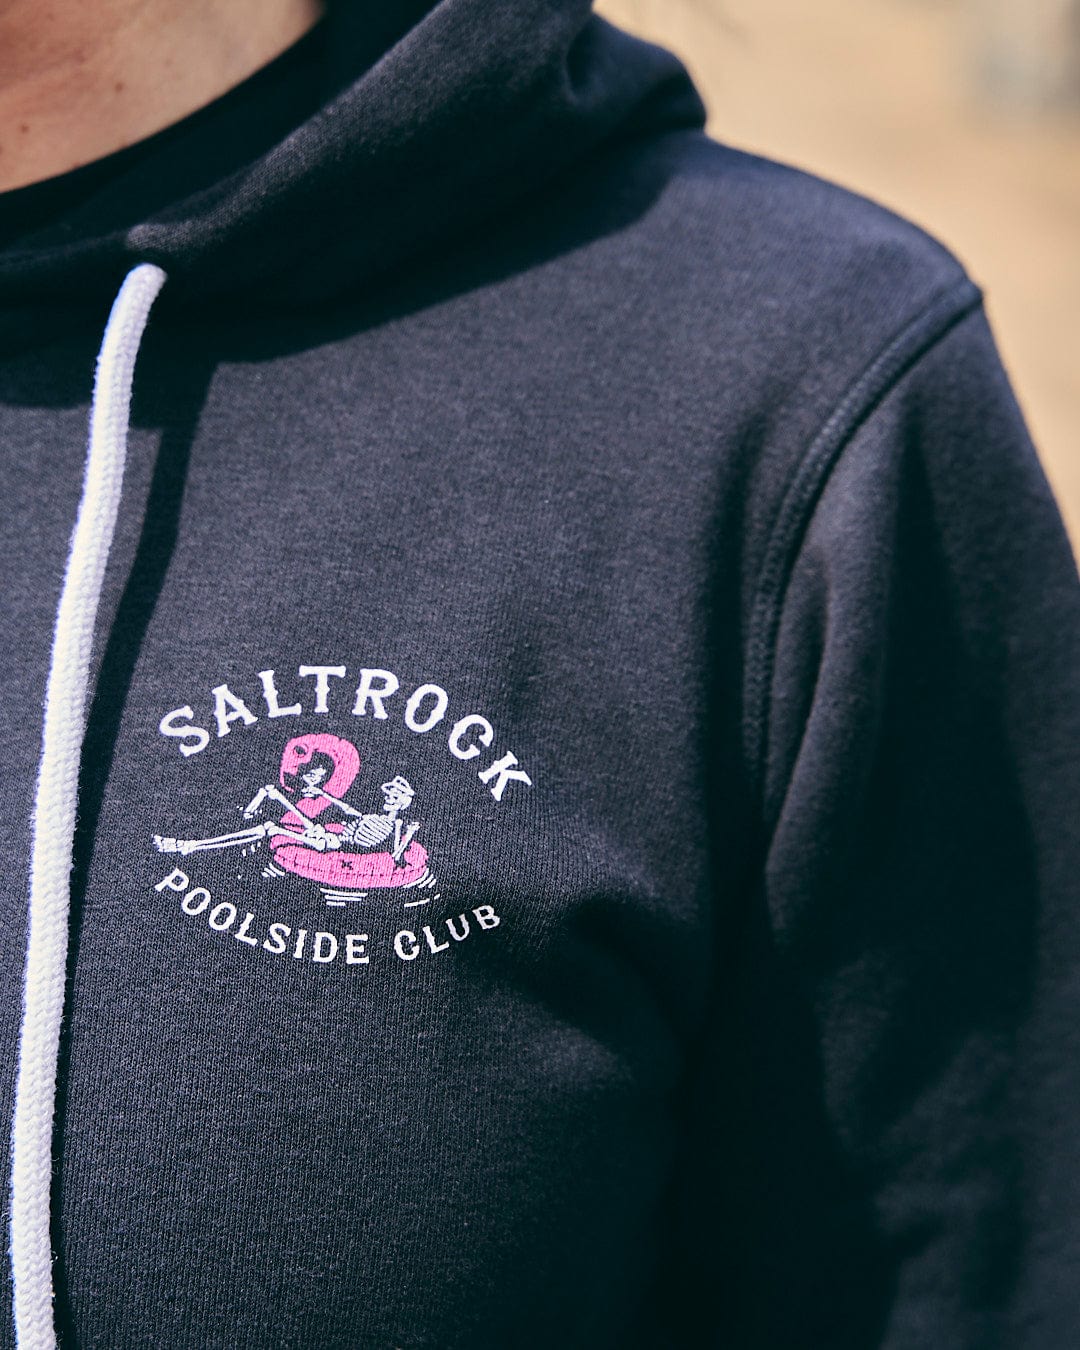 A woman wearing a Lee-Ann - Womens Zip Hoodie - Black by Saltrock that says "Saltrock poolside club.